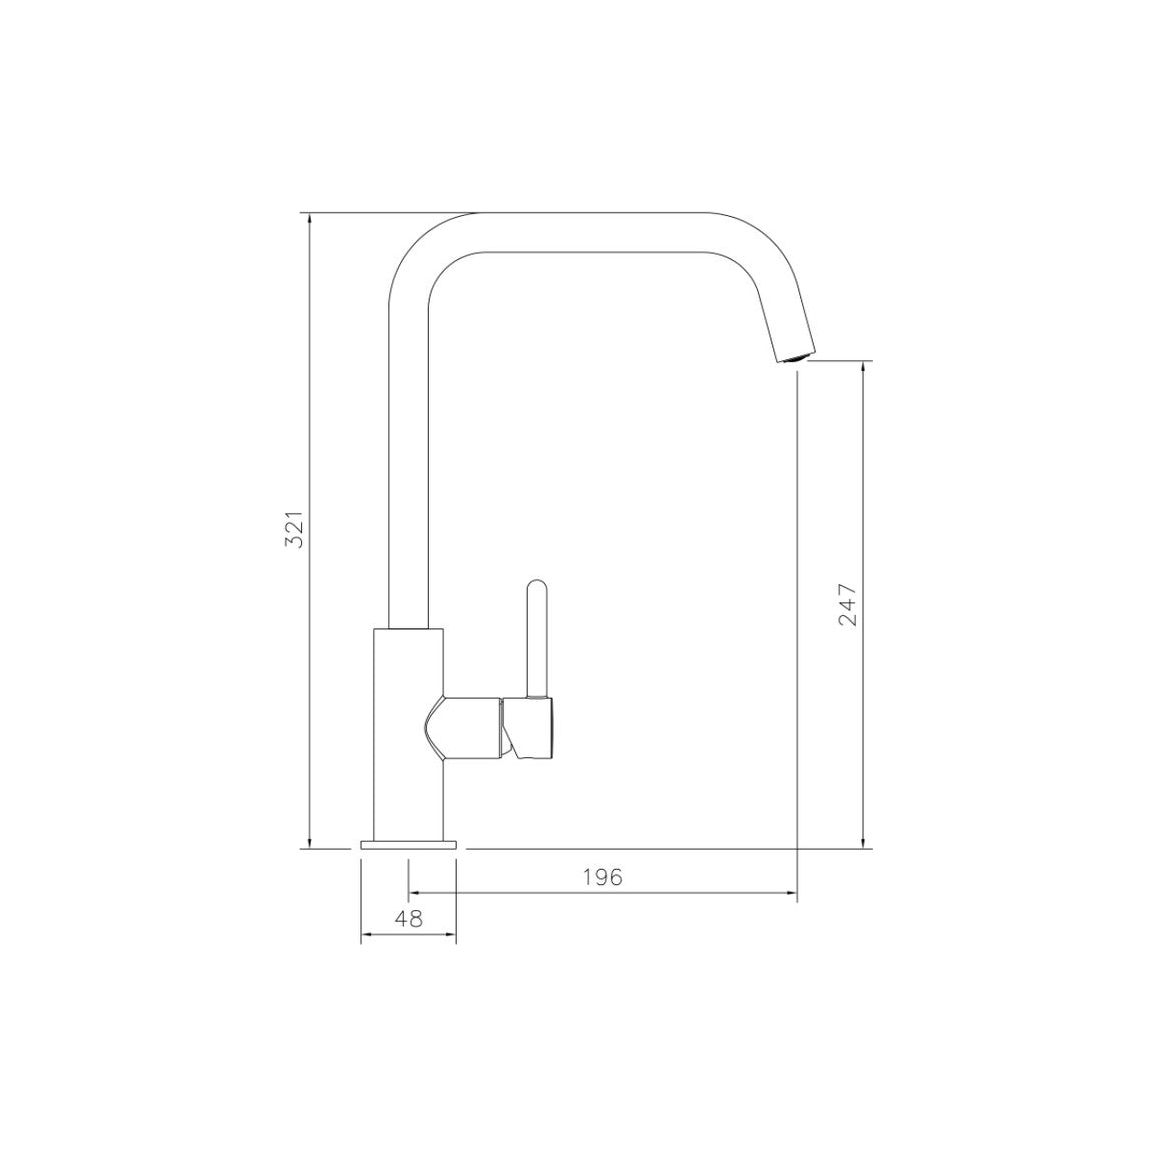 Abode Althia Single Lever Mixer Tap - Terracotta